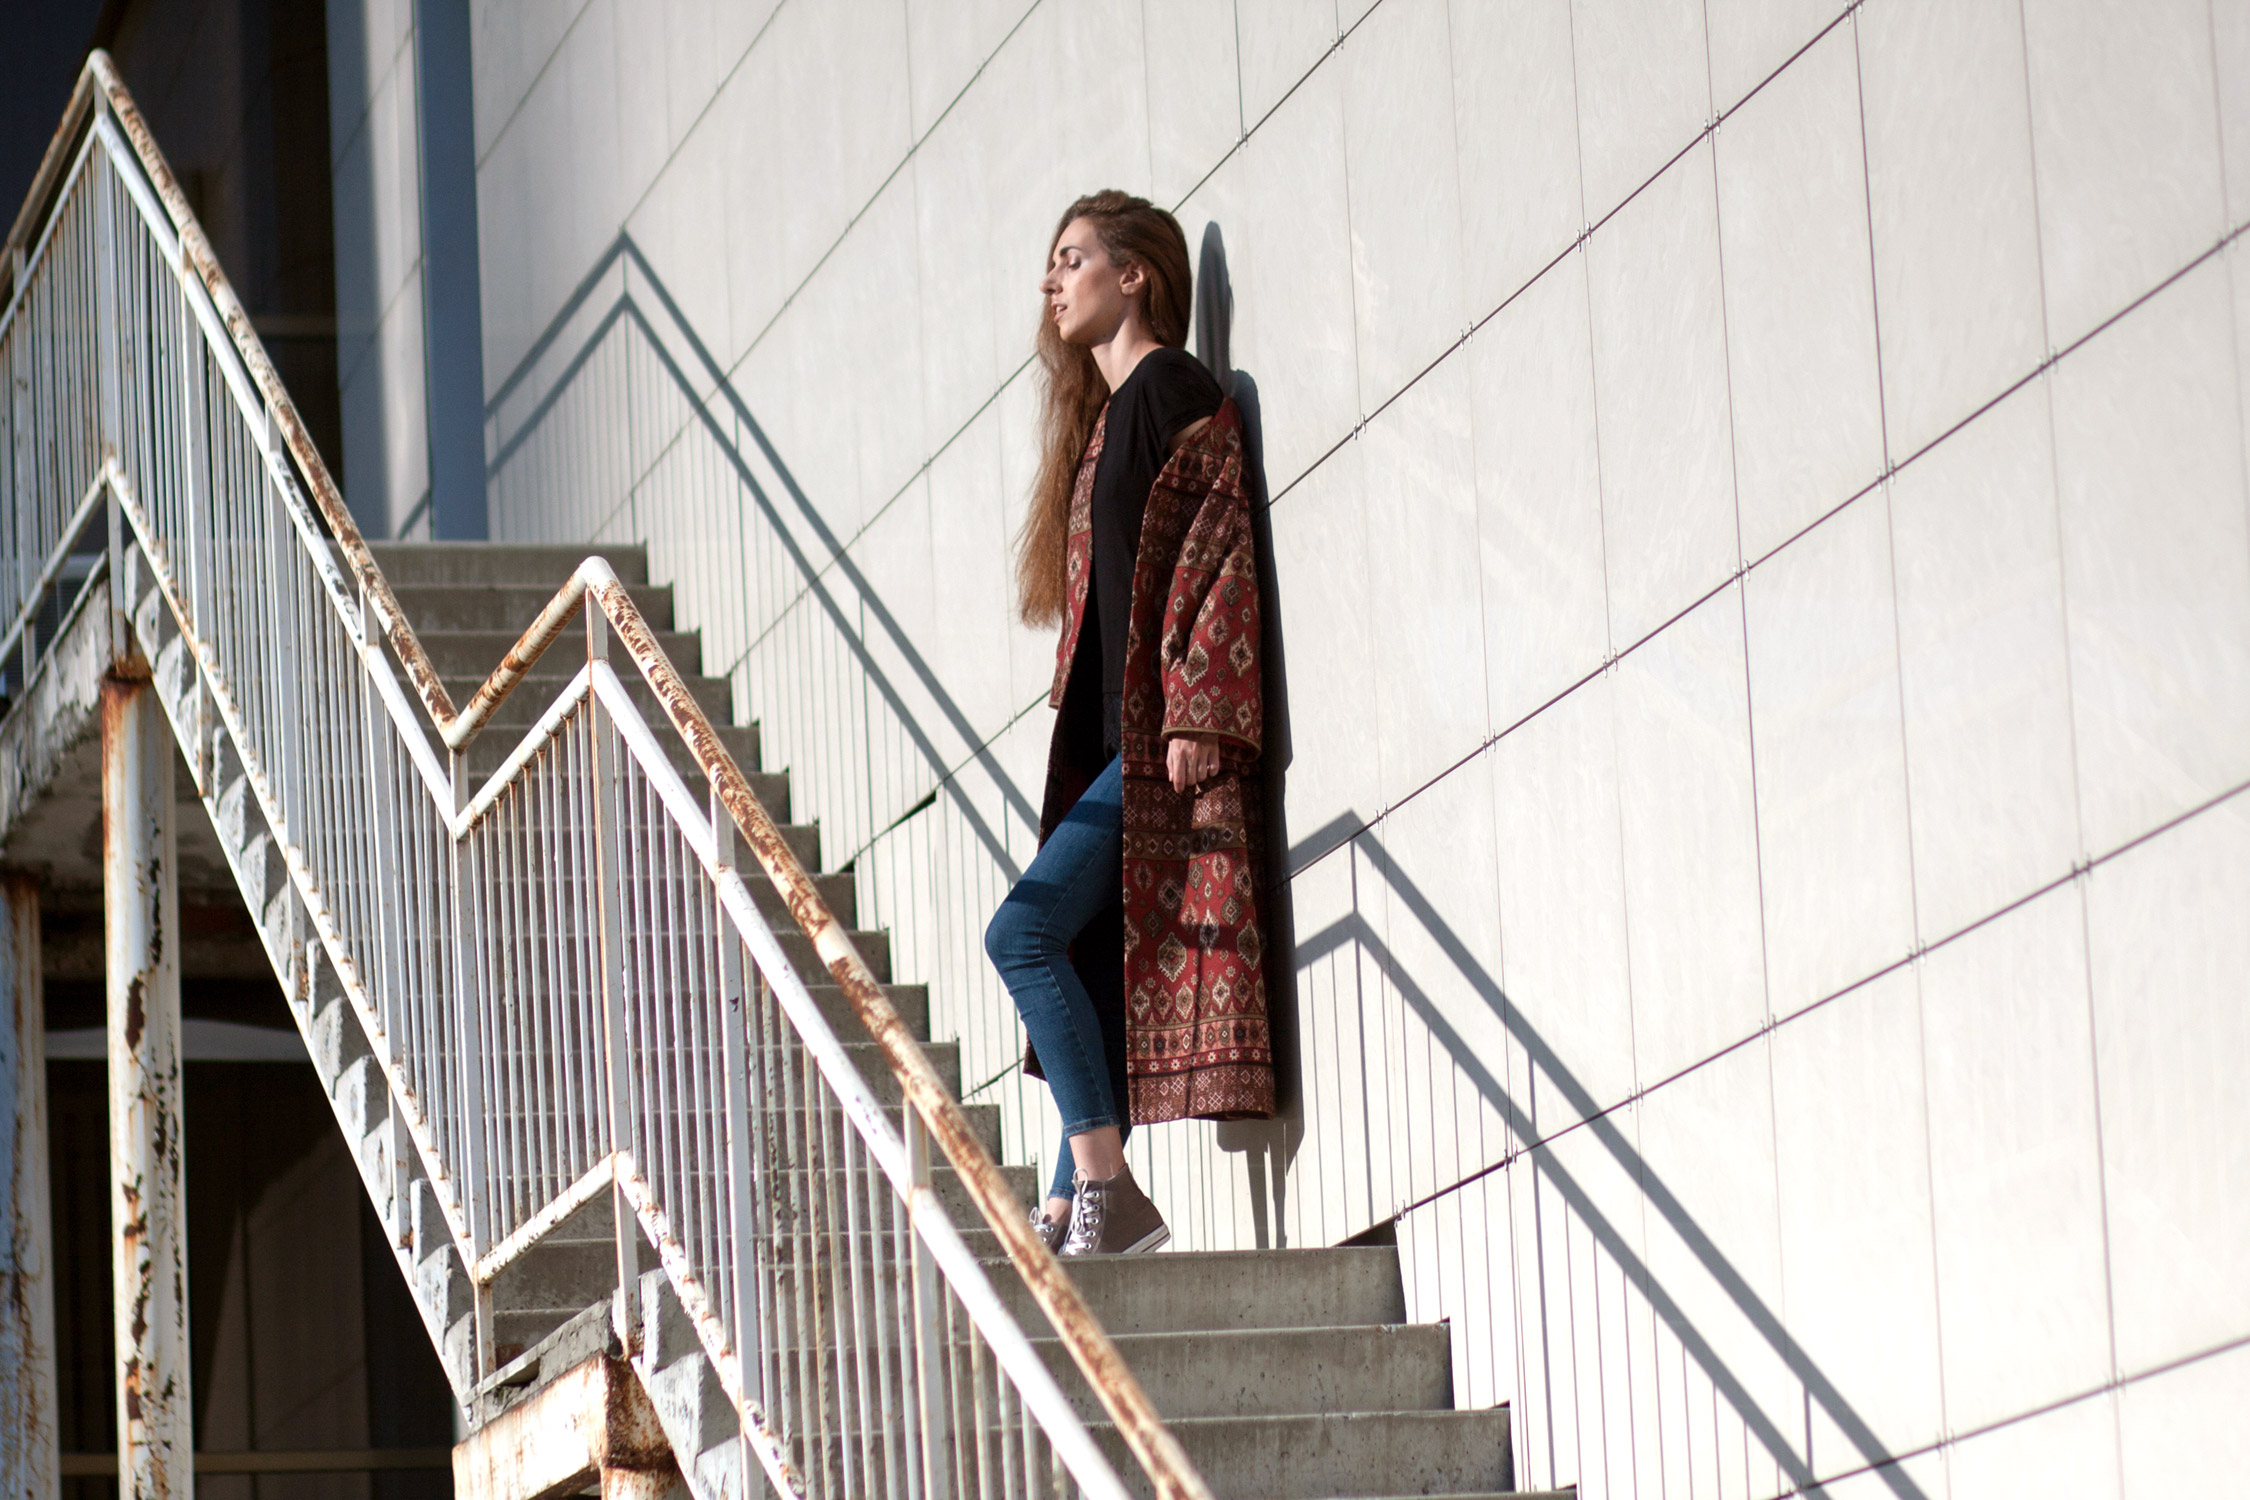 Халат-кимоно в ориентальном стиле. Фотообзор в журнале о нижнем белье и стиле GB {Garterblog.ru} / Фотограф – Анна Панова